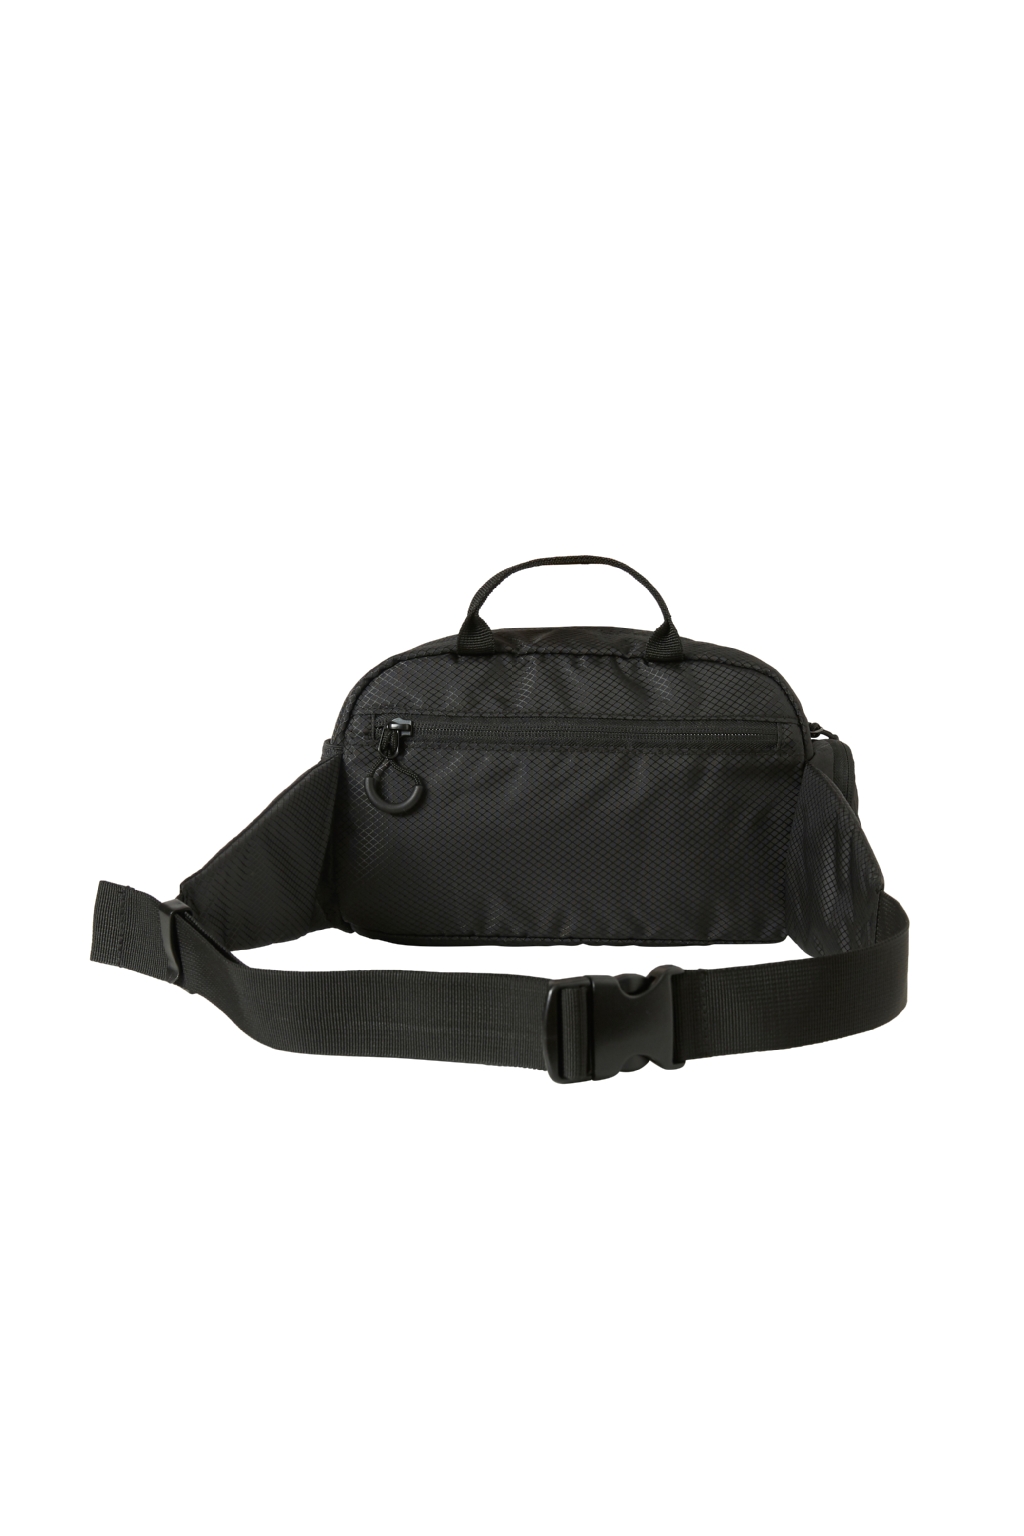 Belt bag CAT 83366-01